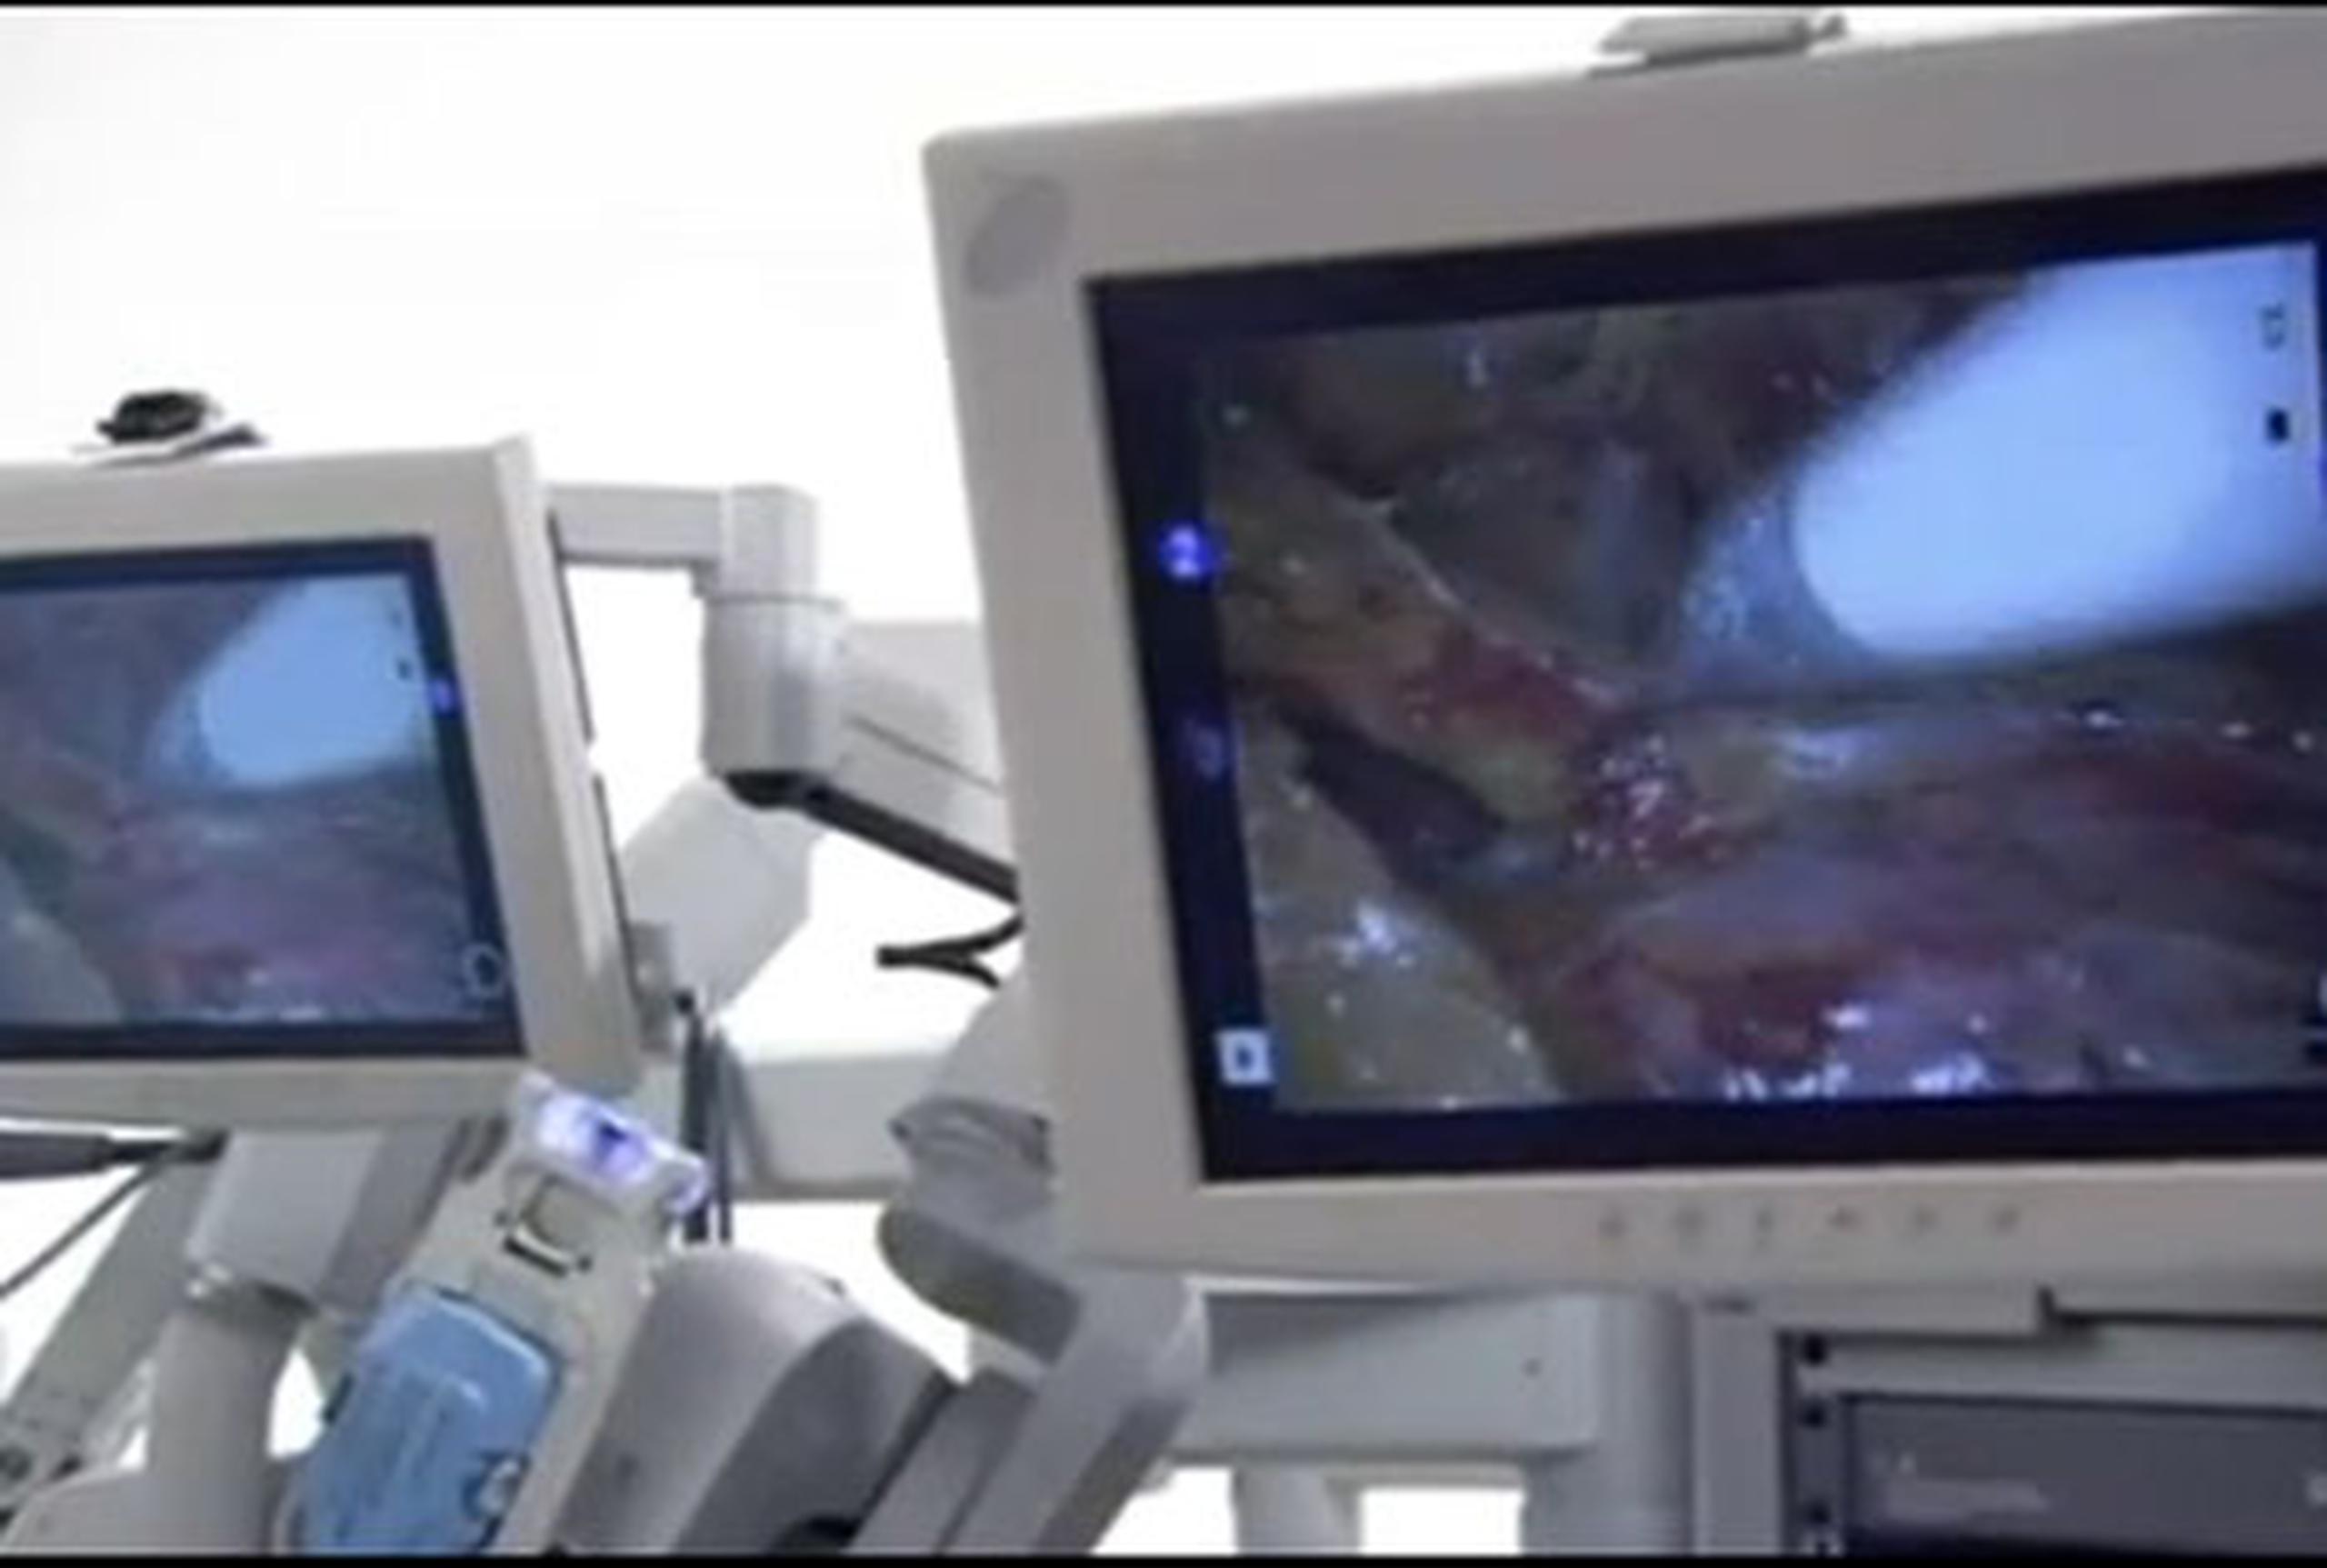 La cirugía robótica es un procedimiento de laparoscopia, que se practica a través de pequeñas incisiones bajo una cámara de vídeo que permite ver el campo de intervención del paciente en tres dimensiones y actuar sobre él con tres brazos mecánicos articulados y dirigidos por el médico desde la distancia. (EFE)